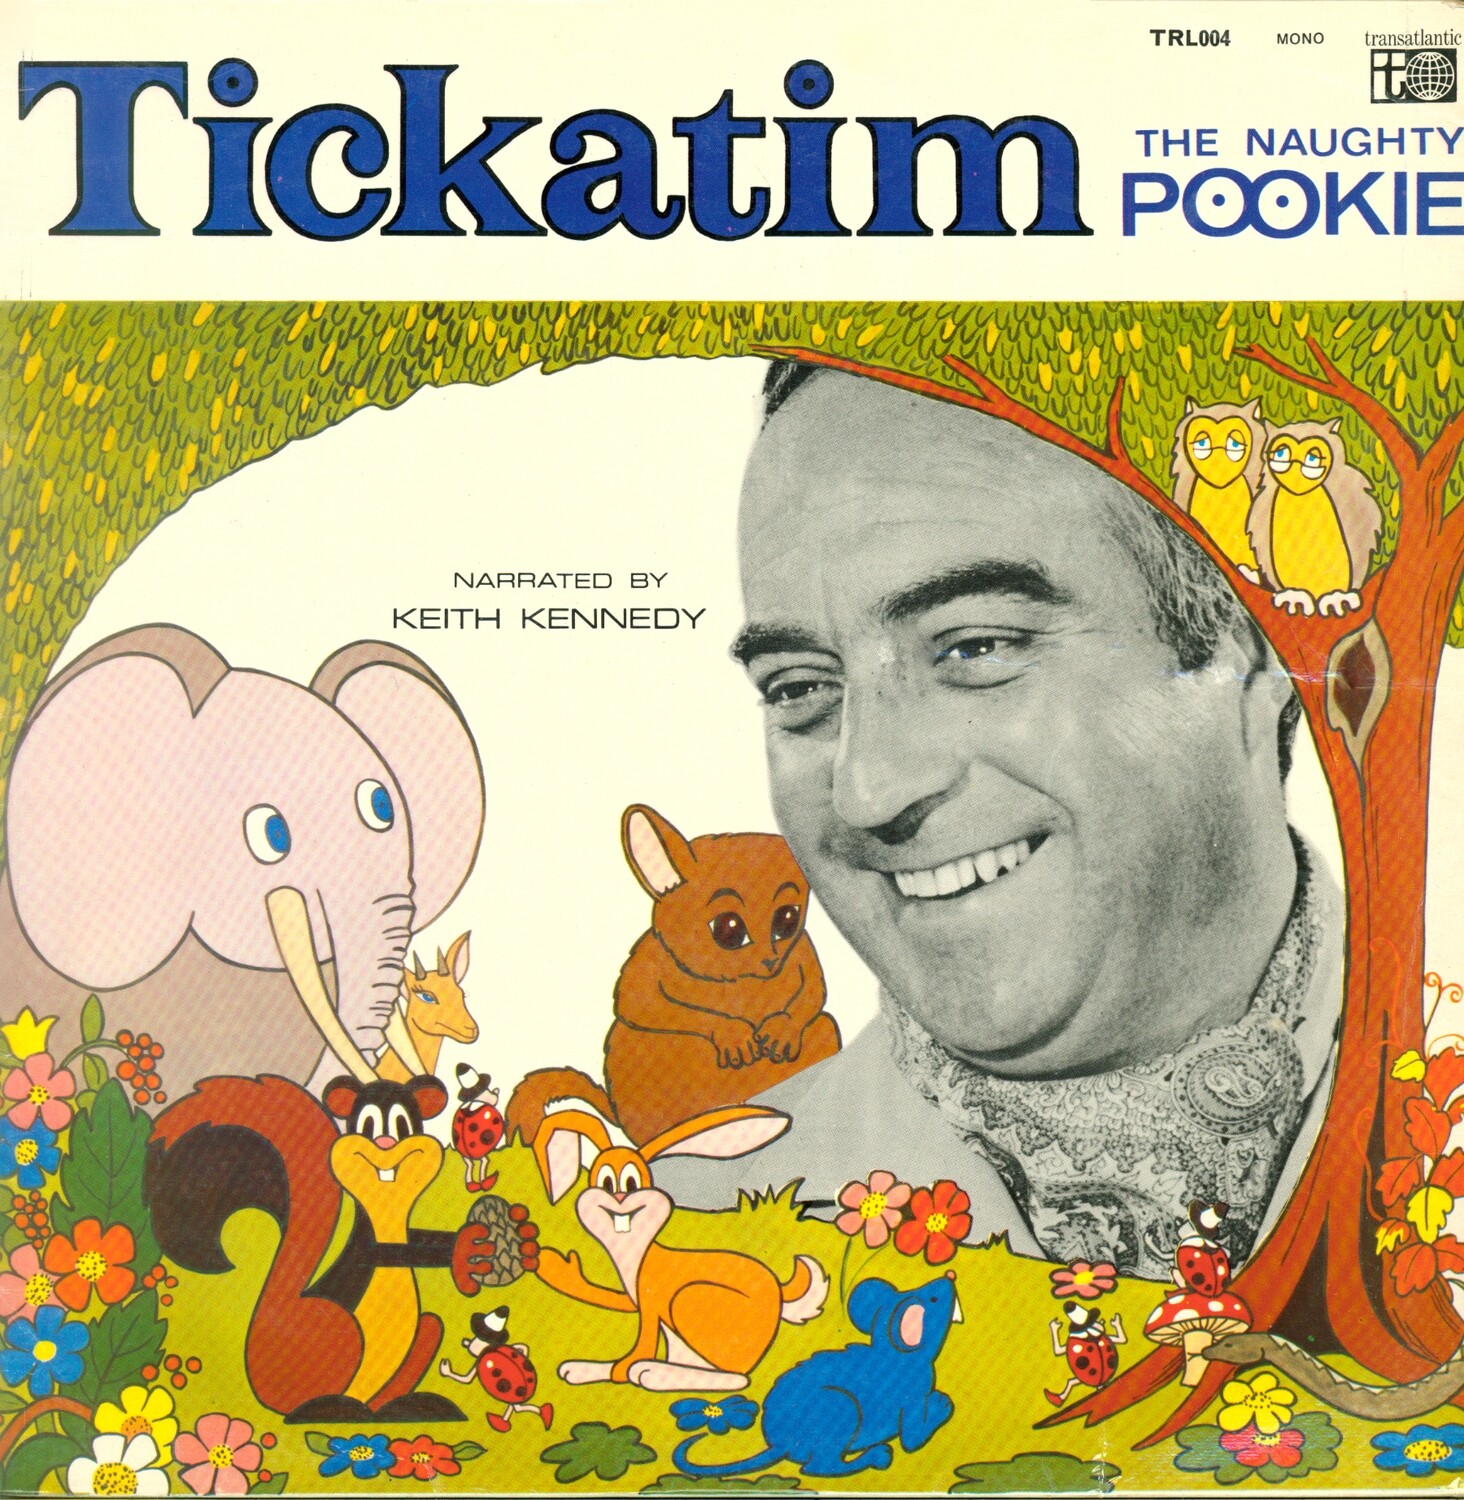 Tikatim - The Naughty Pookie